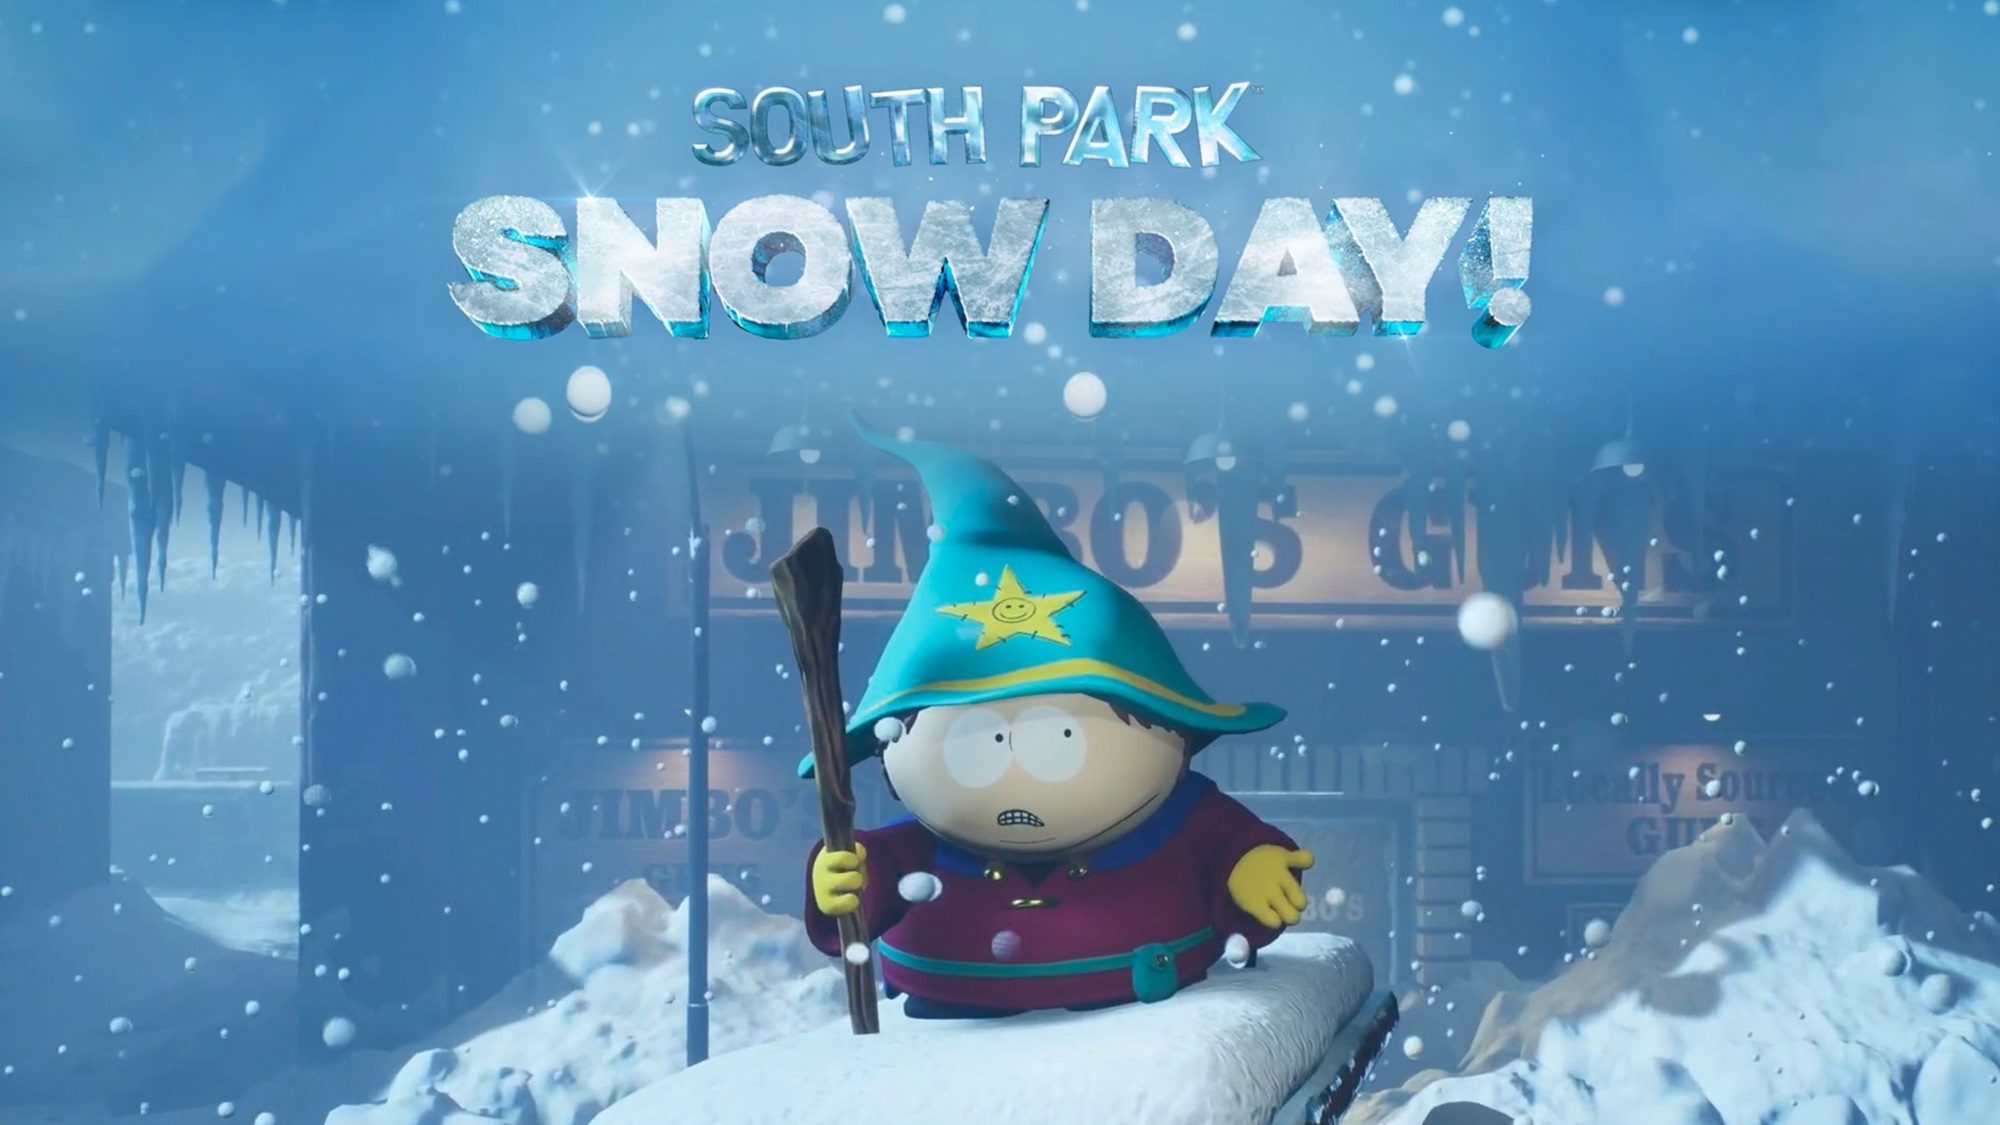 South park snow day купить. Южный парк Snow Day. Southpark Snow Day. South Park: Snow Day!. South Park Snow Day Дата выхода.